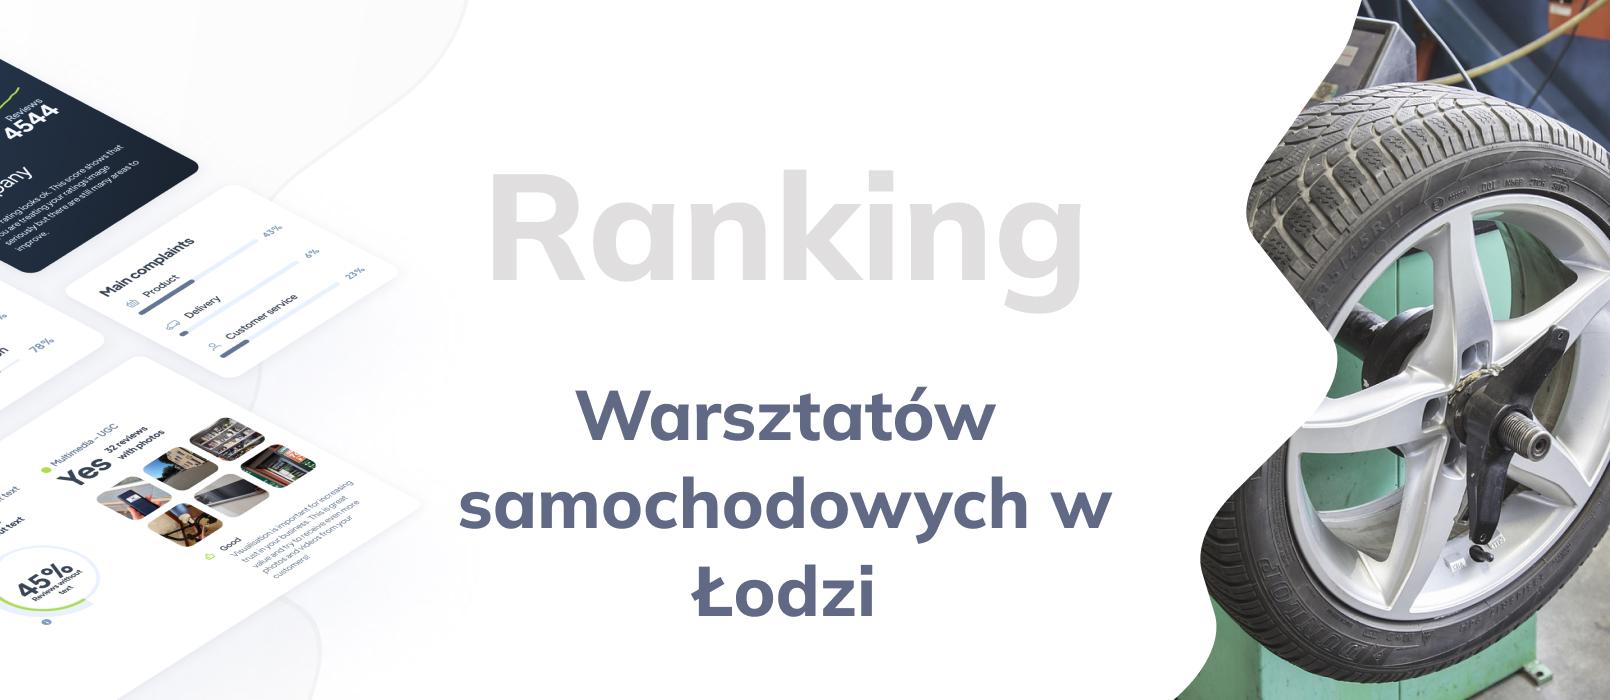 Warsztaty samochodowe w Łodzi - ranking TOP 10